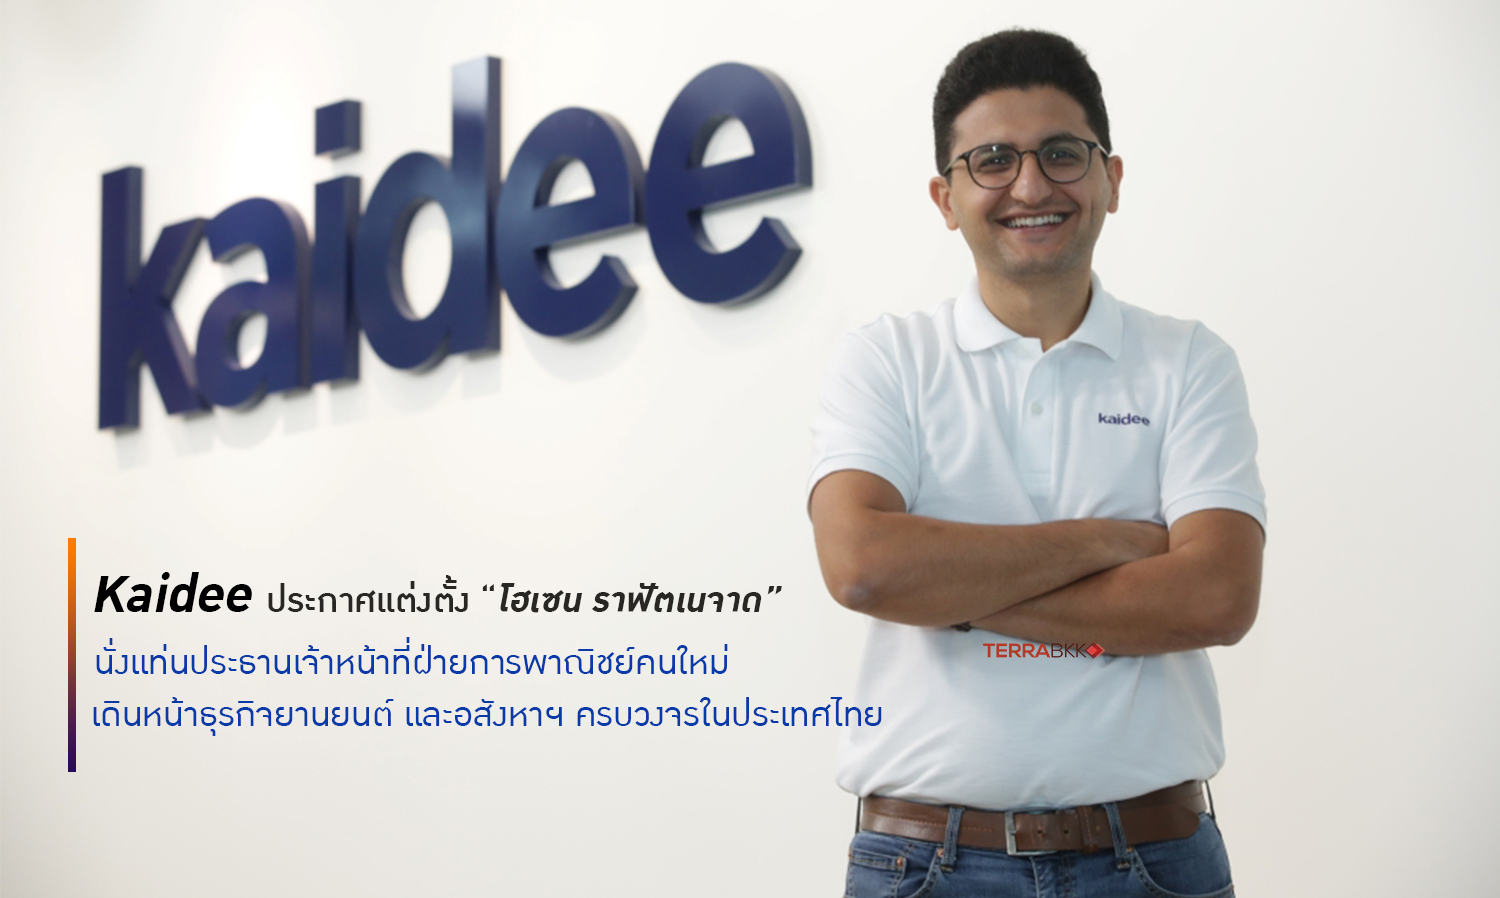 Kaidee แต่งตั้ง “โฮเซน ราฟัตเนจาด” ประธานเจ้าหน้าที่ฝ่ายการพาณิชย์คนใหม่ เดินหน้าธุรกิจยานยนต์ และอสังหาฯ ครบวงจรในไทย